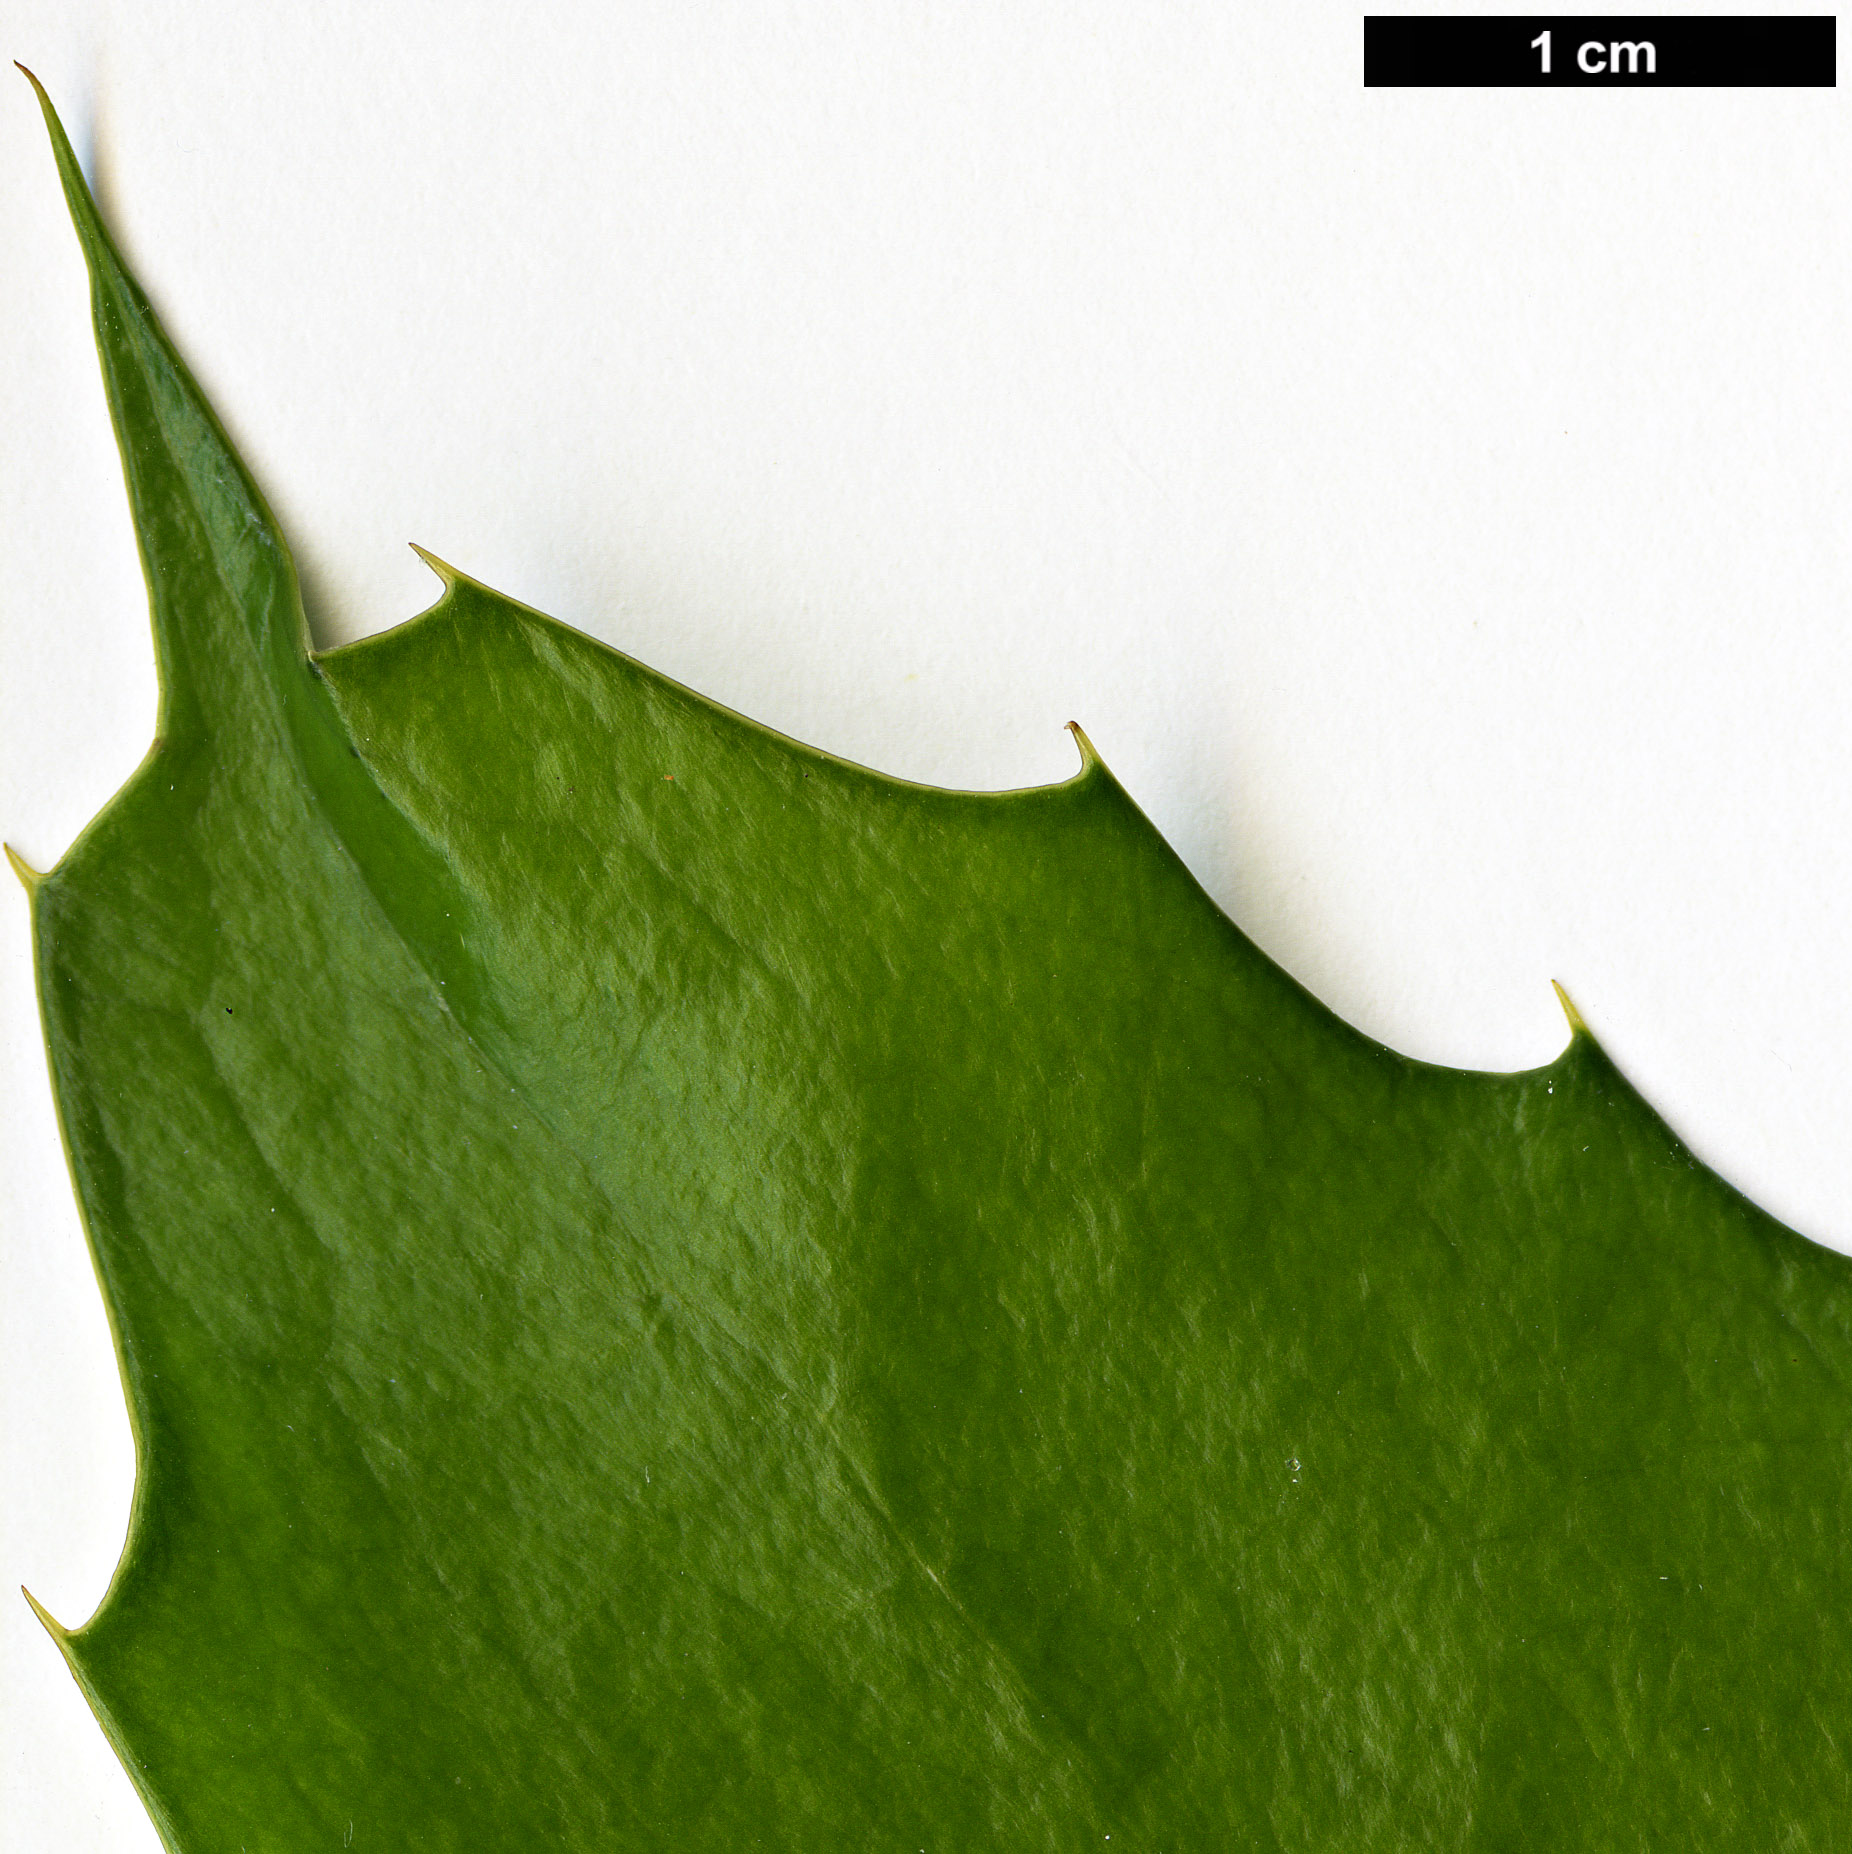 High resolution image: Family: Berberidaceae - Genus: Mahonia - Taxon: nitens